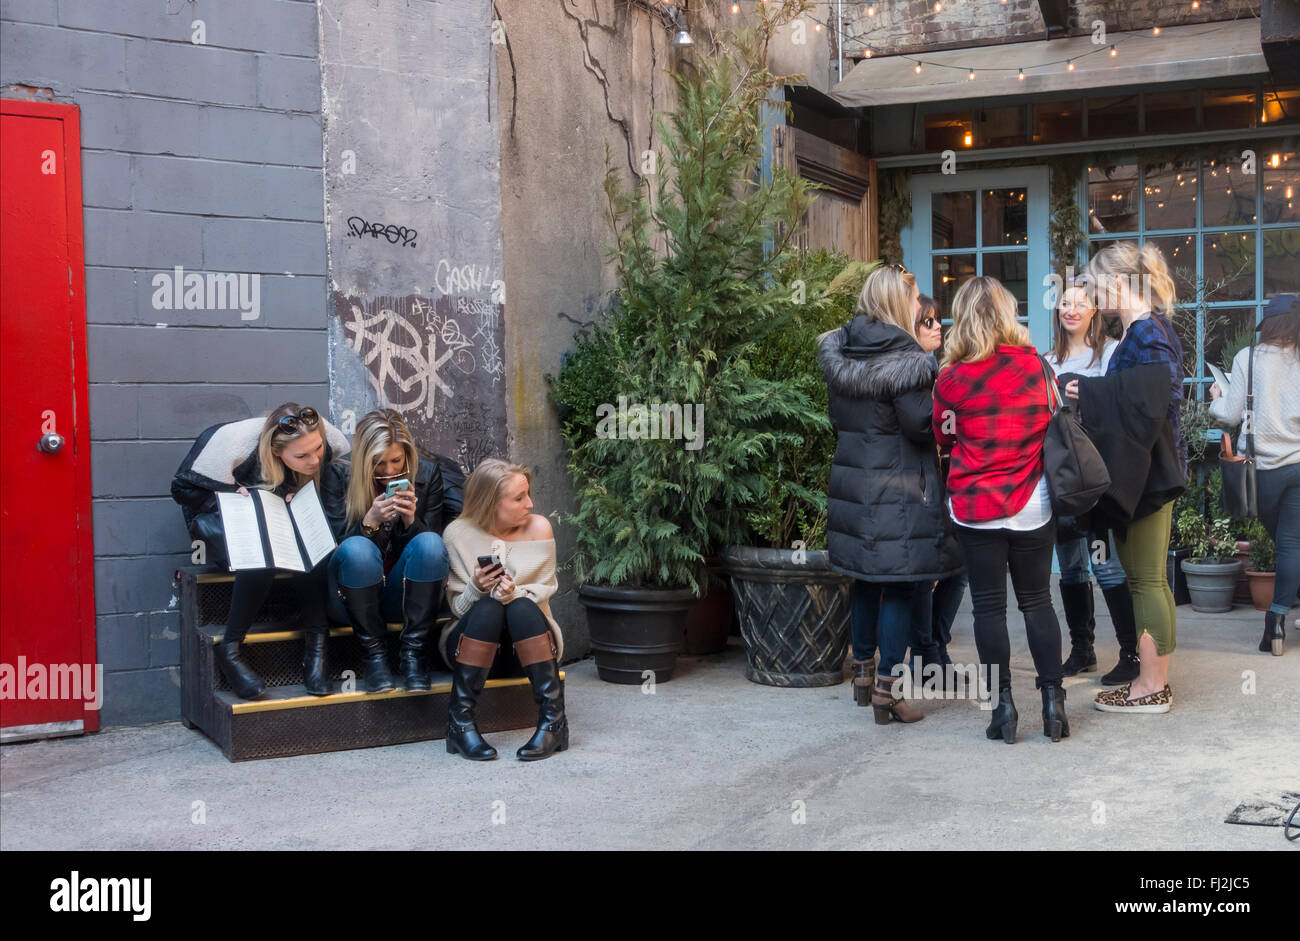 Gruppen von jungen Frauen warten auf einen Tisch zum Brunch in Freemans Restaurant in Freemans Alley in New York City Stockfoto